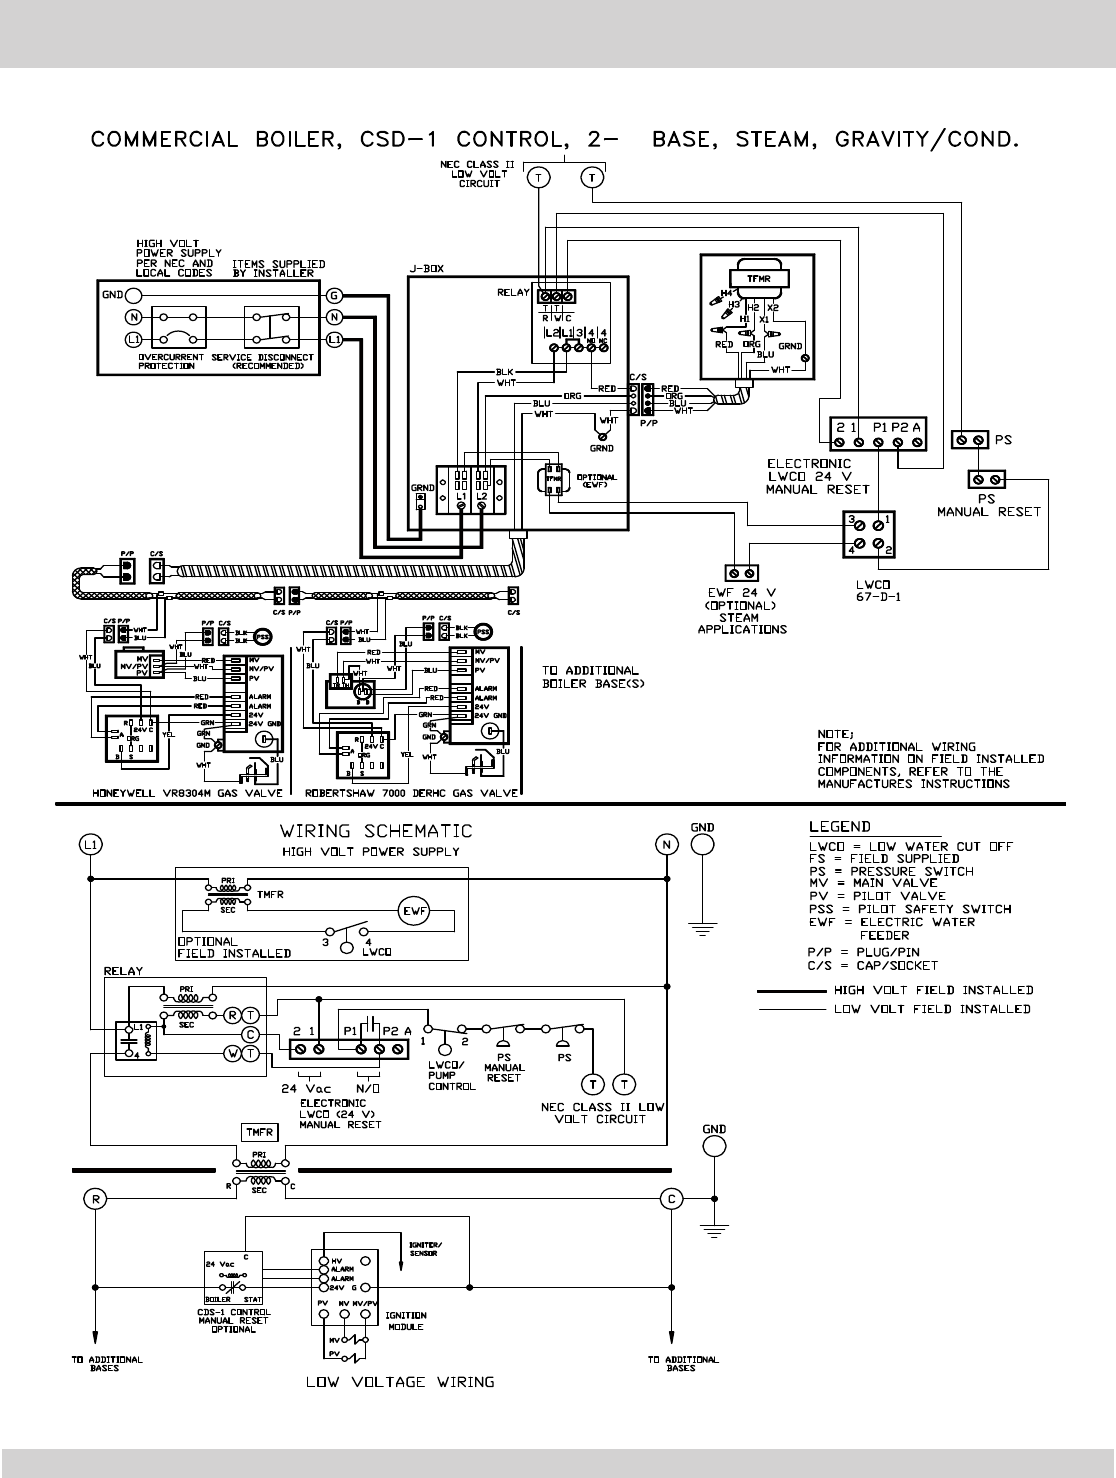 Wiring Diagram For Steam Boiler